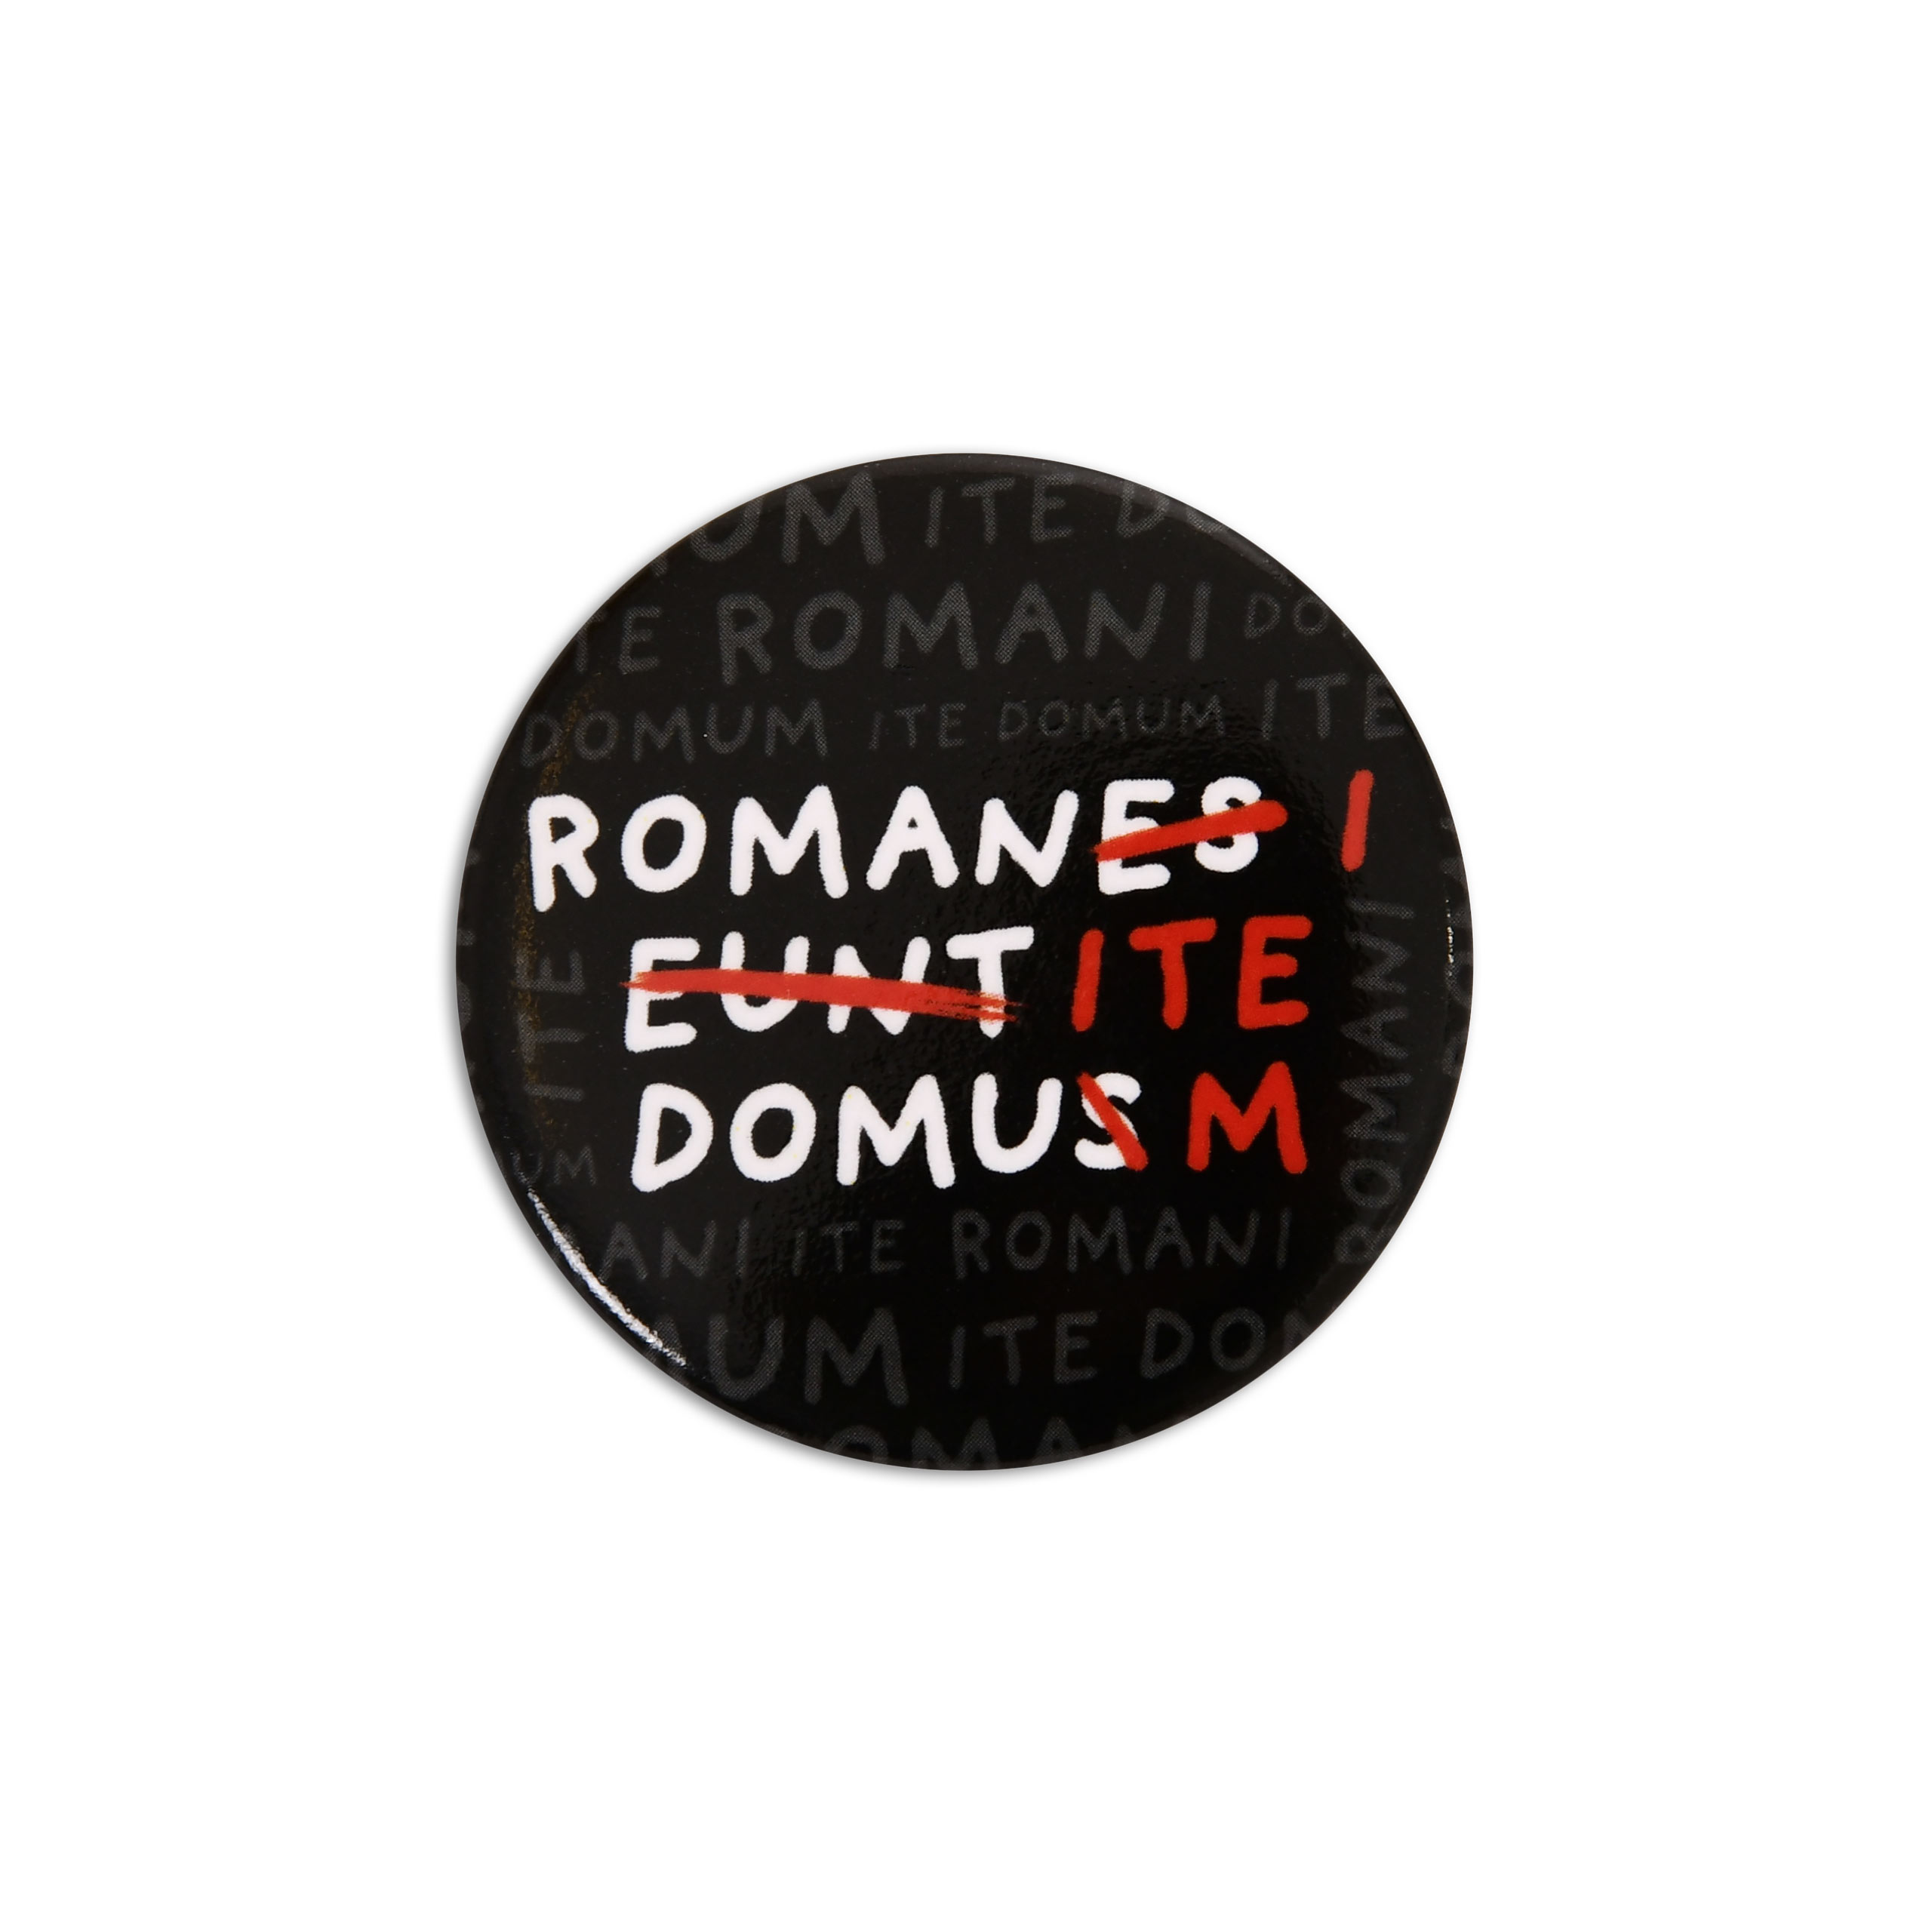 Romani Ite Domum Button for Monty Python Fans